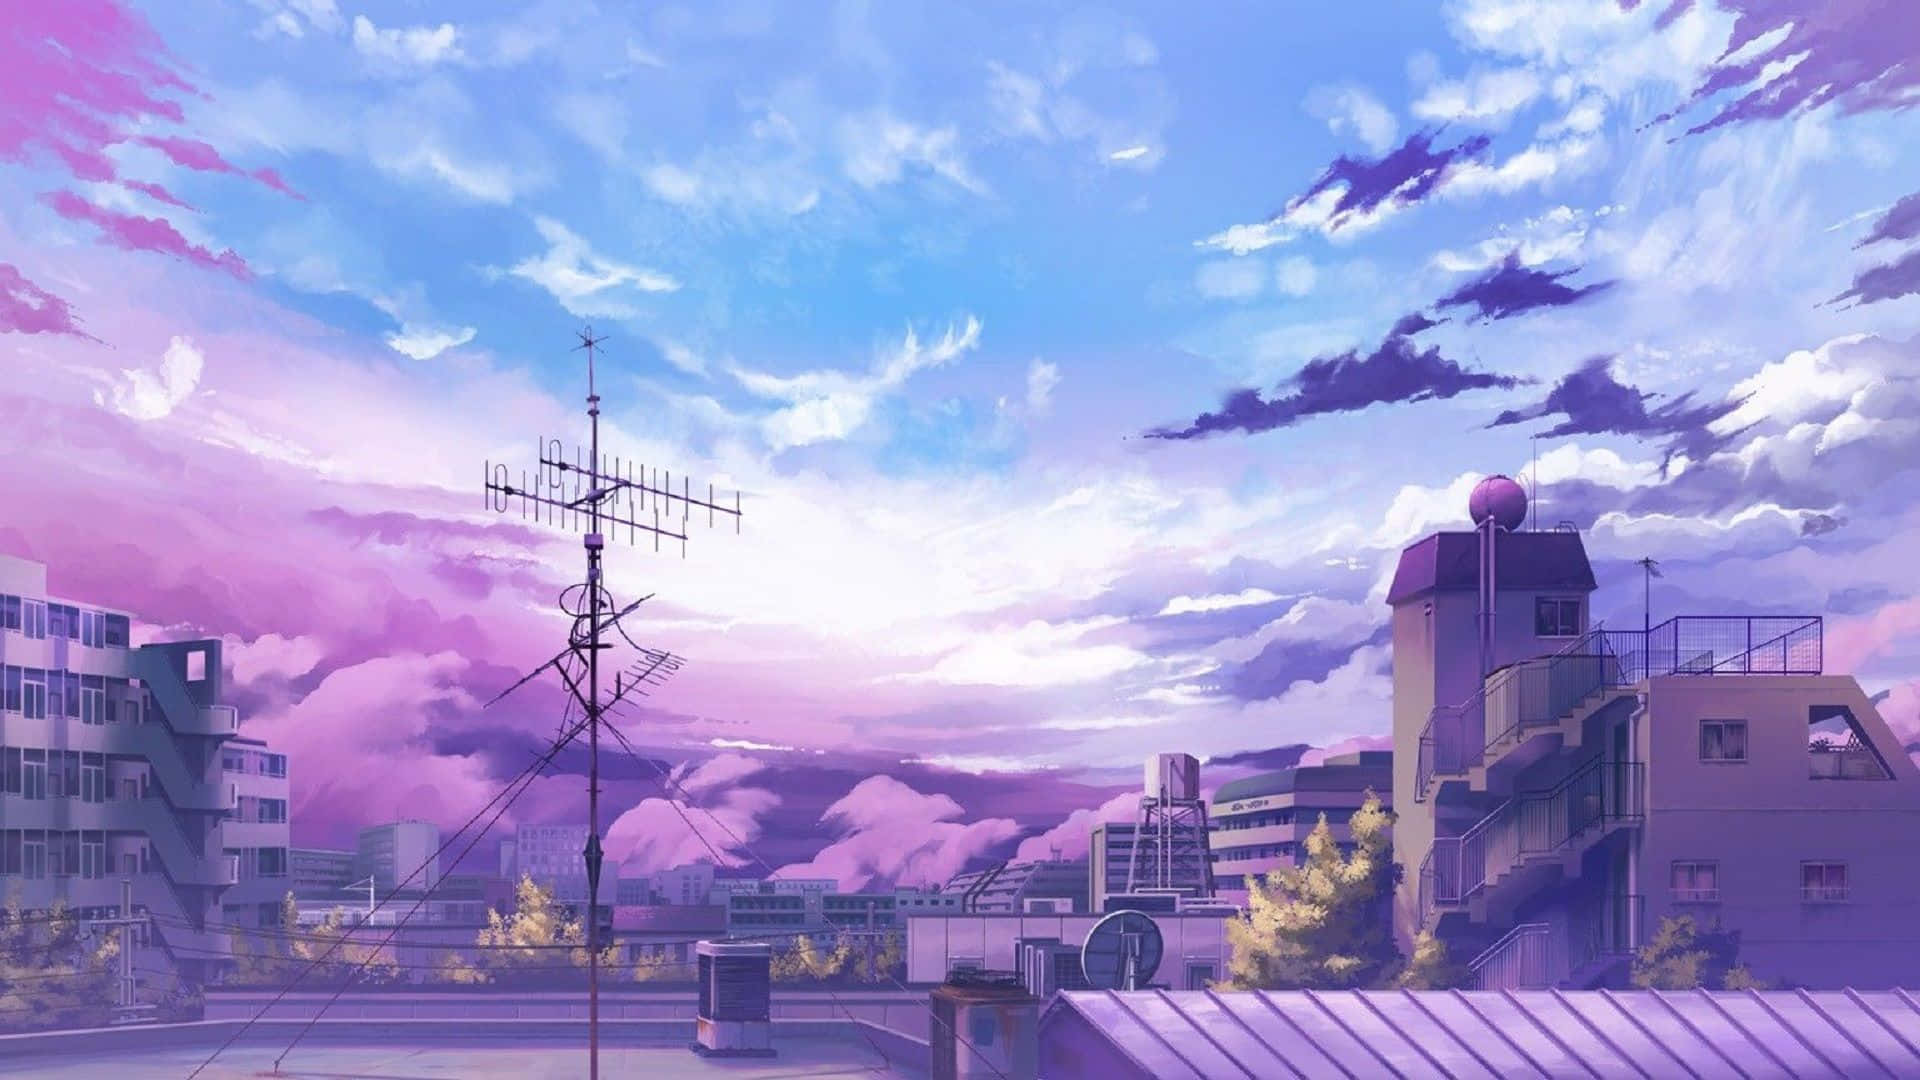 Et lilla himmel med skyer og bygninger Wallpaper